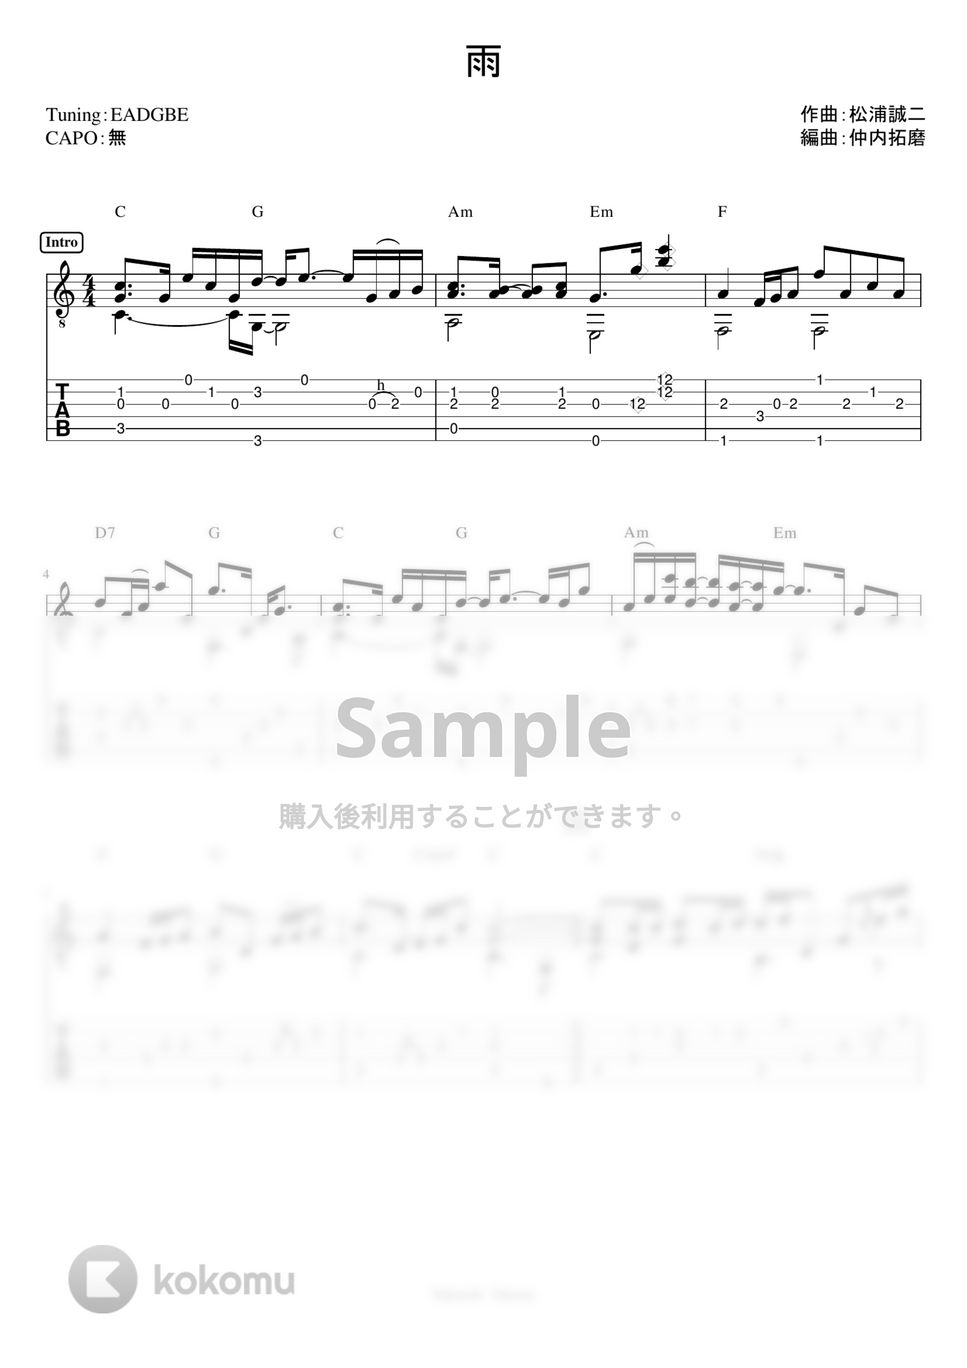 森高千里 - 雨 (ソロギターTAB譜) by 仲内拓磨